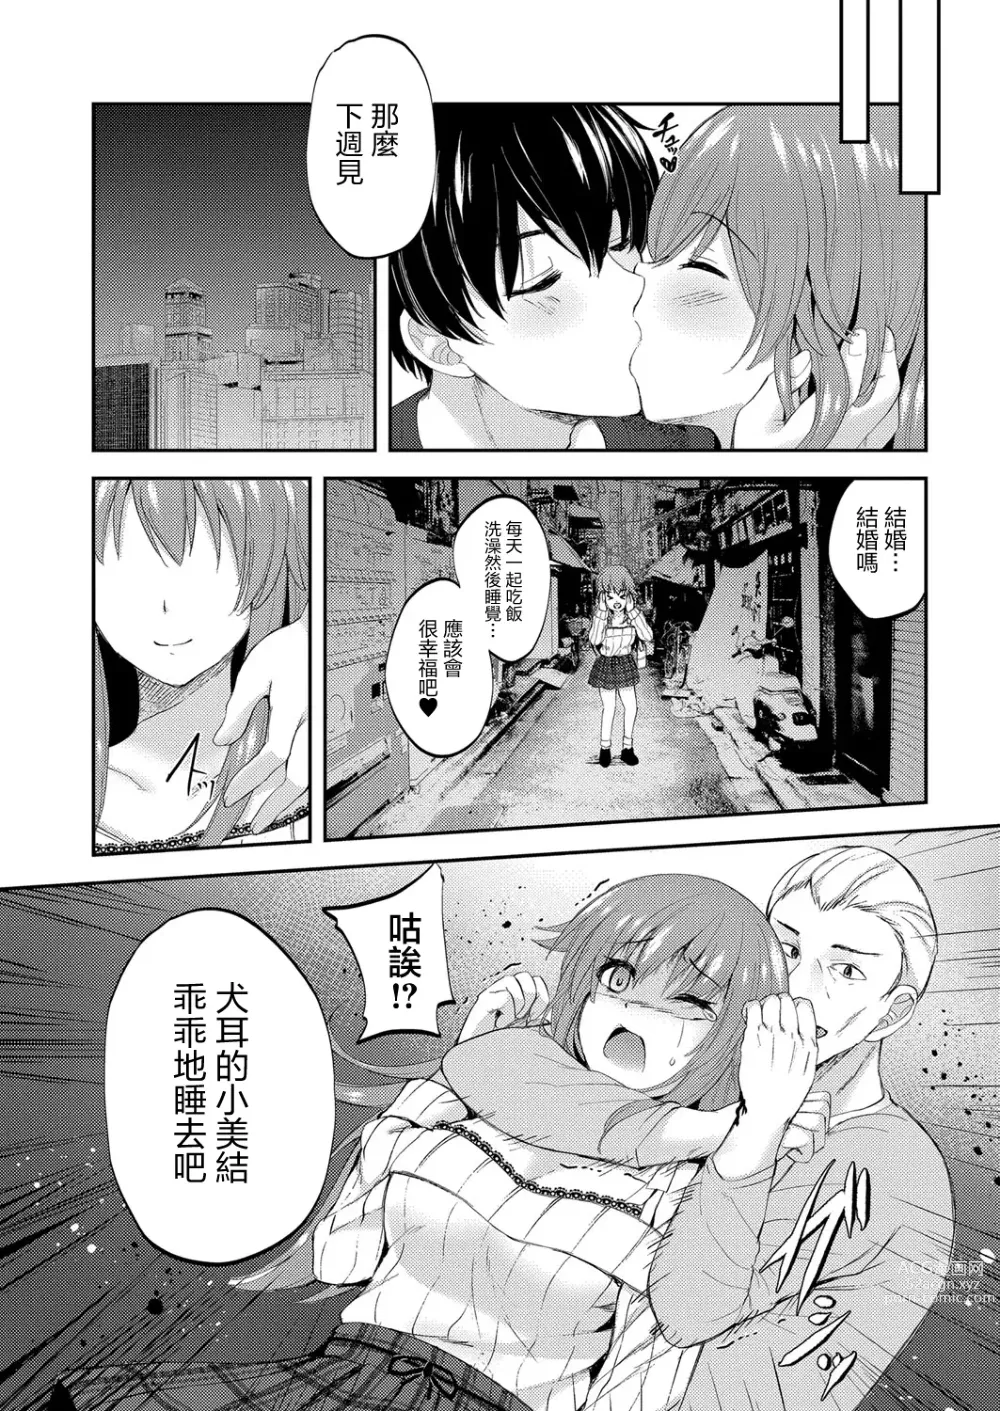 Page 6 of manga Juuka-shou Musume no Junan ~Inu Musume Miyu Hen~